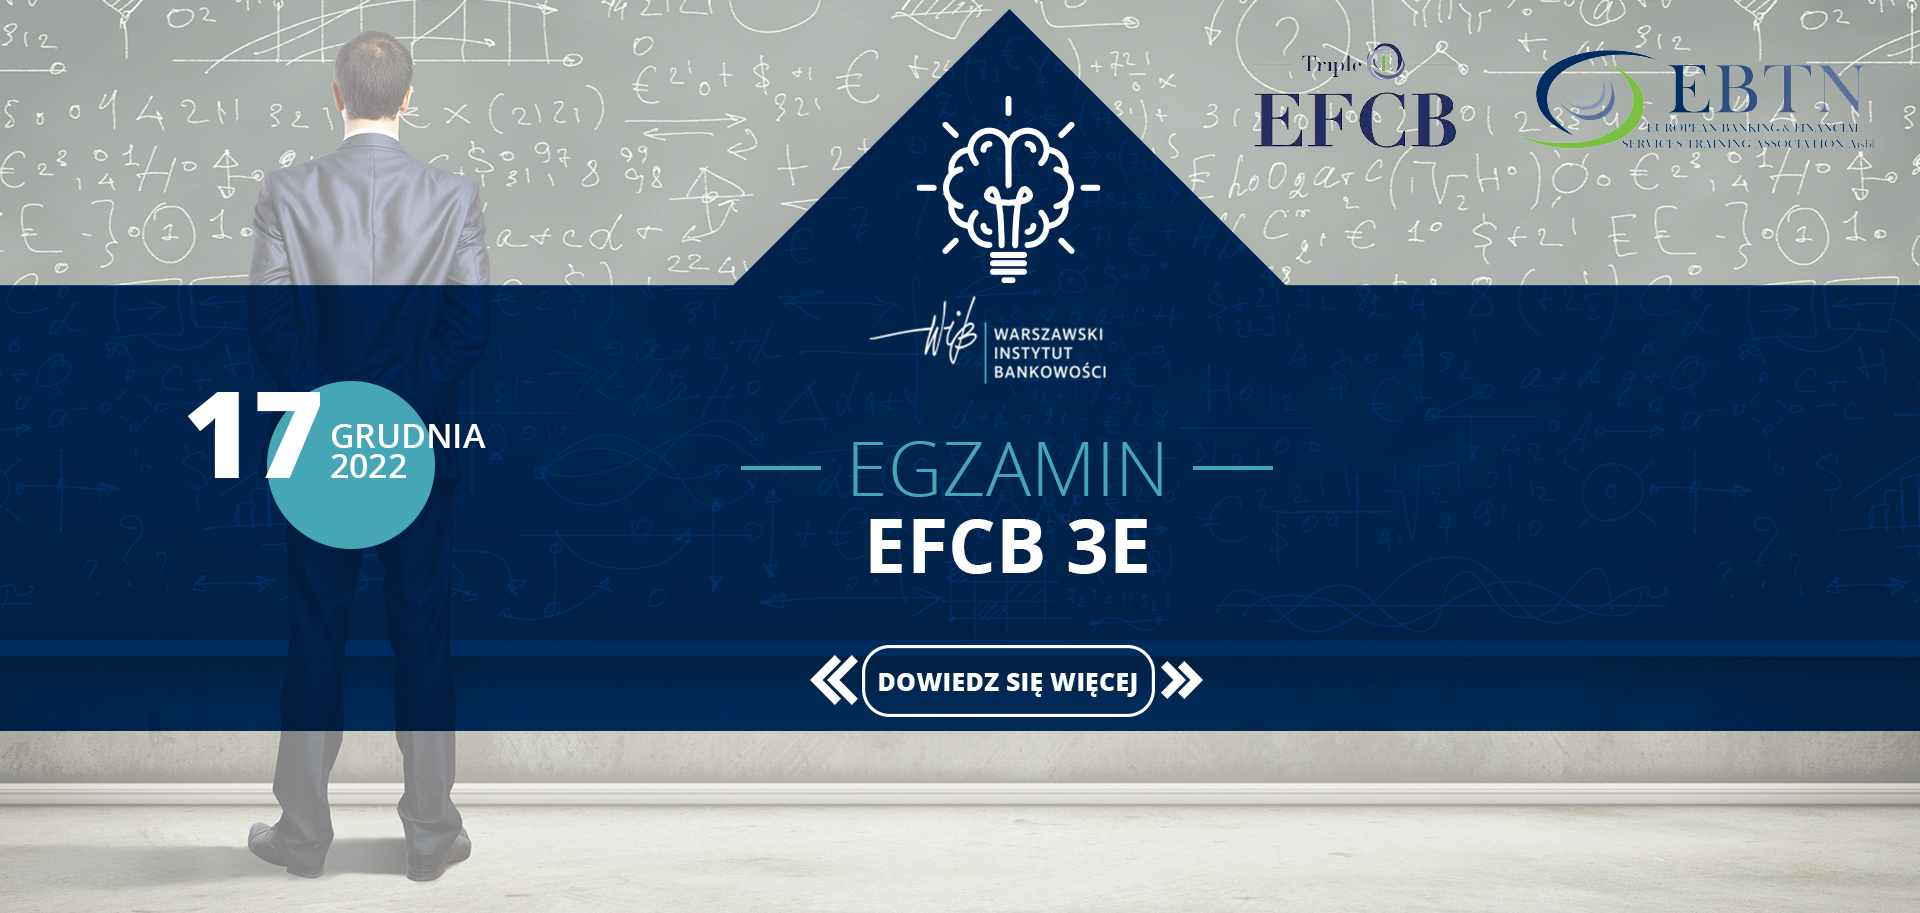 WIB_Egzamin EFCB 3E_1920x913_17grudnia